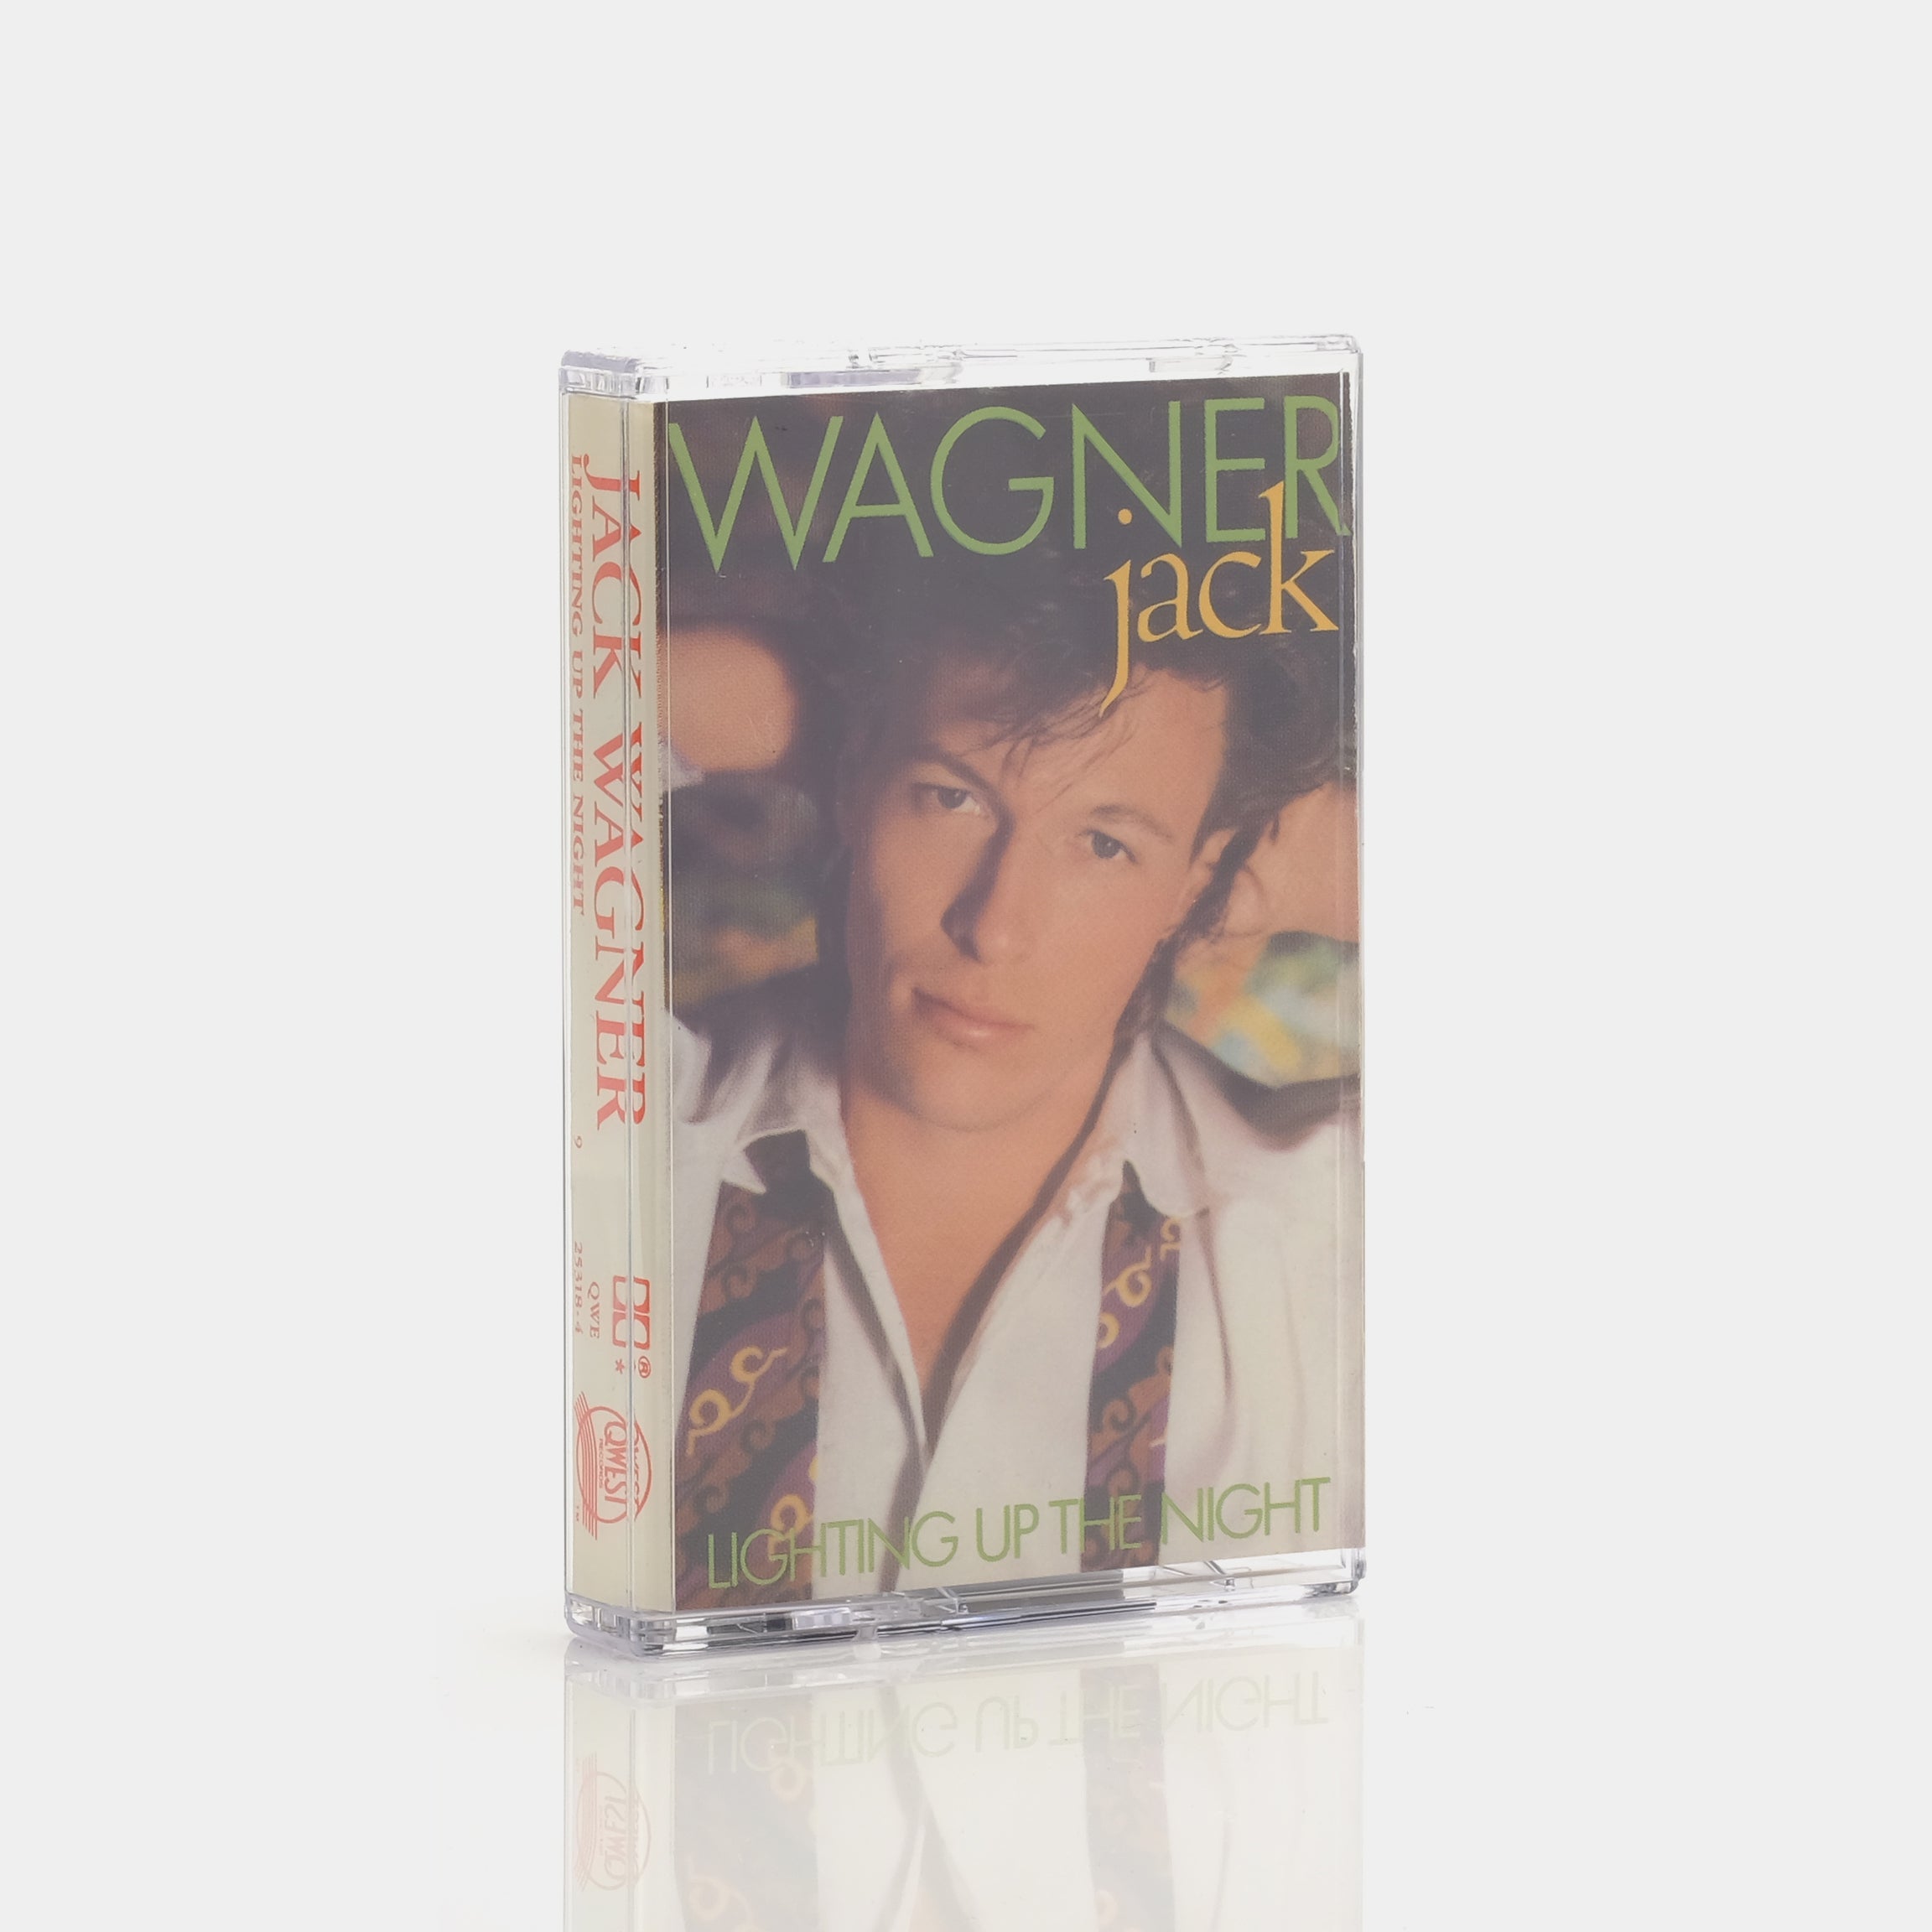 Jack Wagner - Lighting Up The Night Cassette Tape